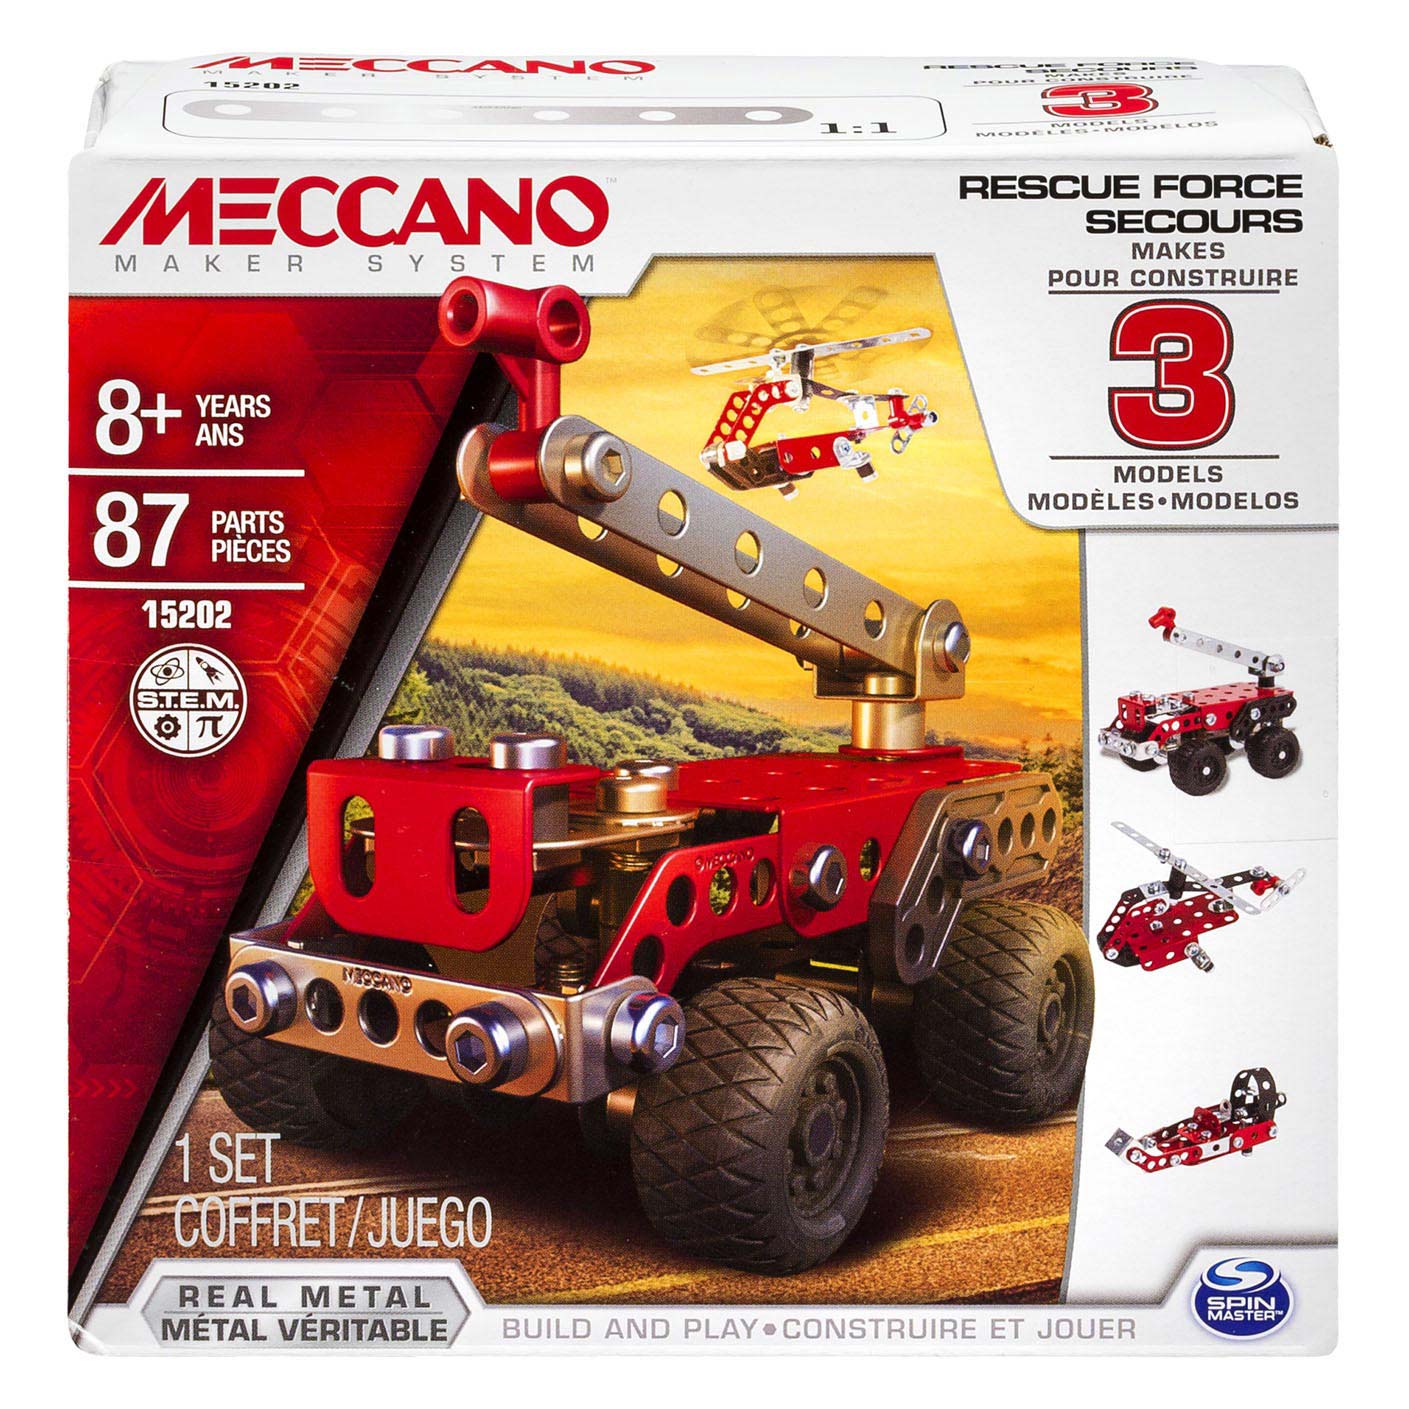 Meccano - Camion de pompiers, kit de construction STEM 3en1